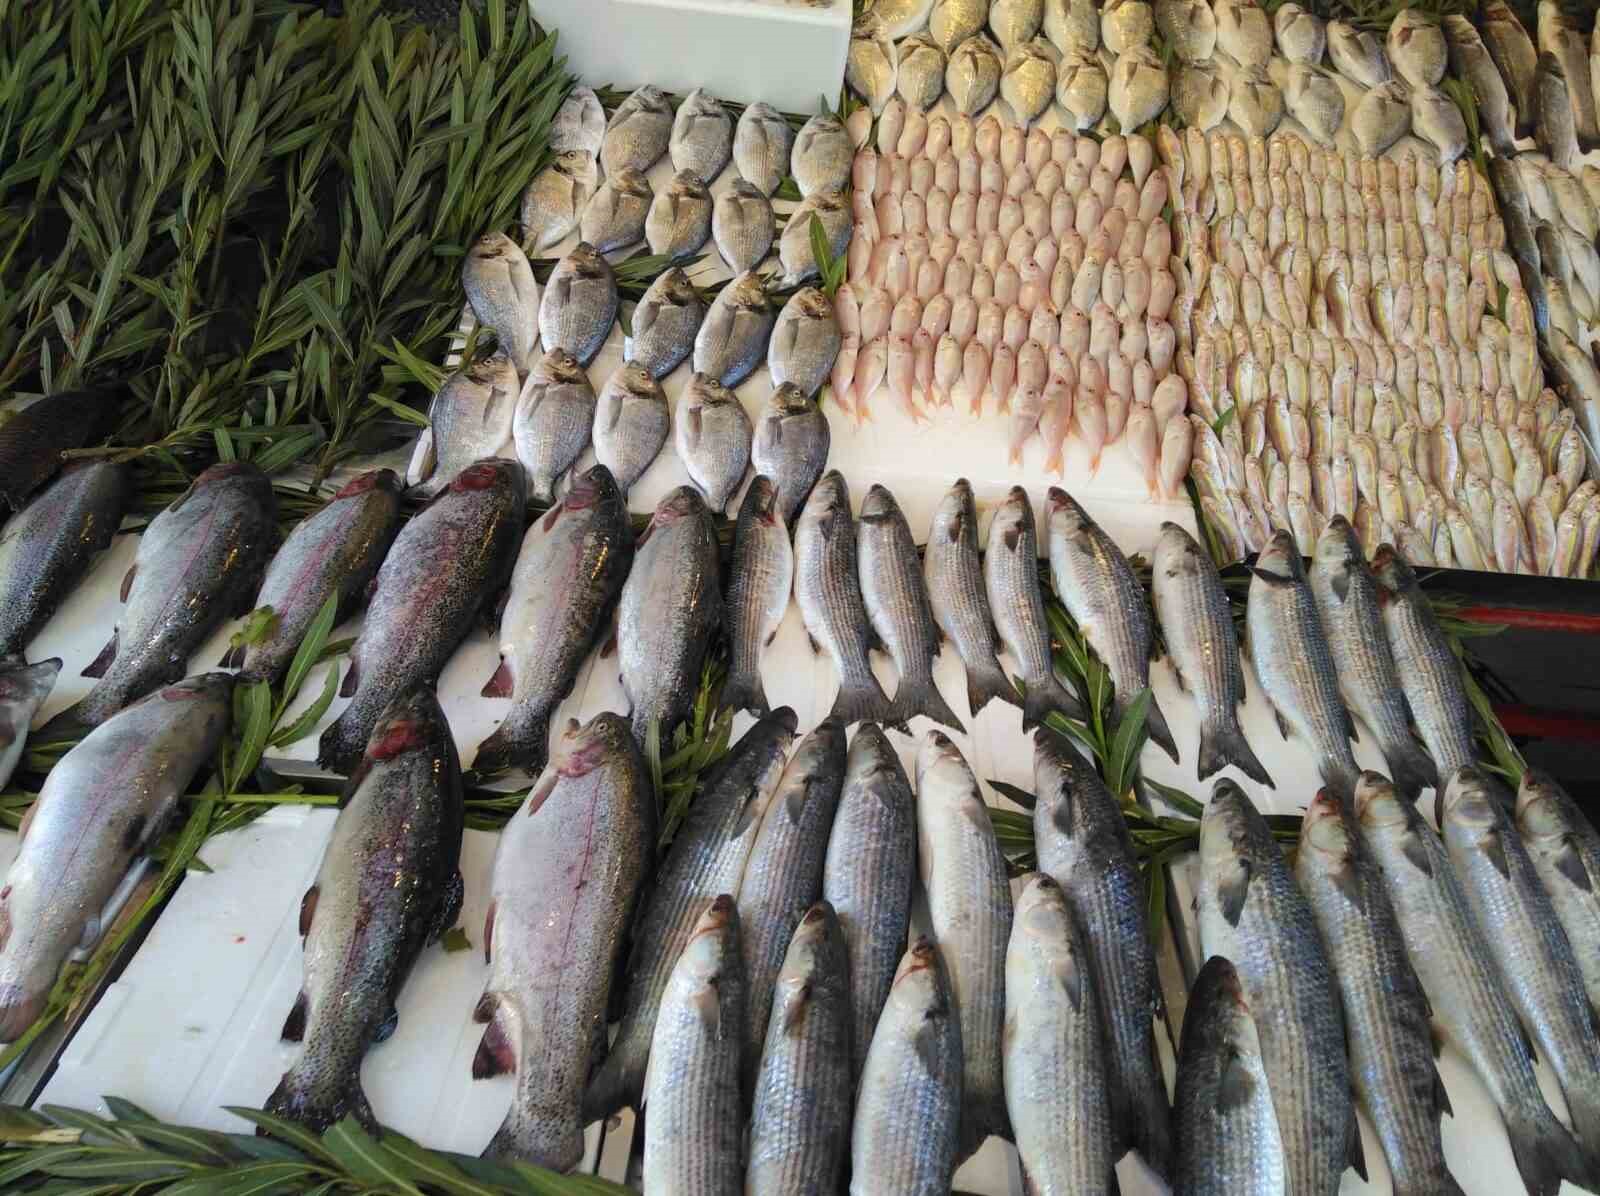 Av yasağı başladı, Diyarbakır’da balık fiyatları arttı
